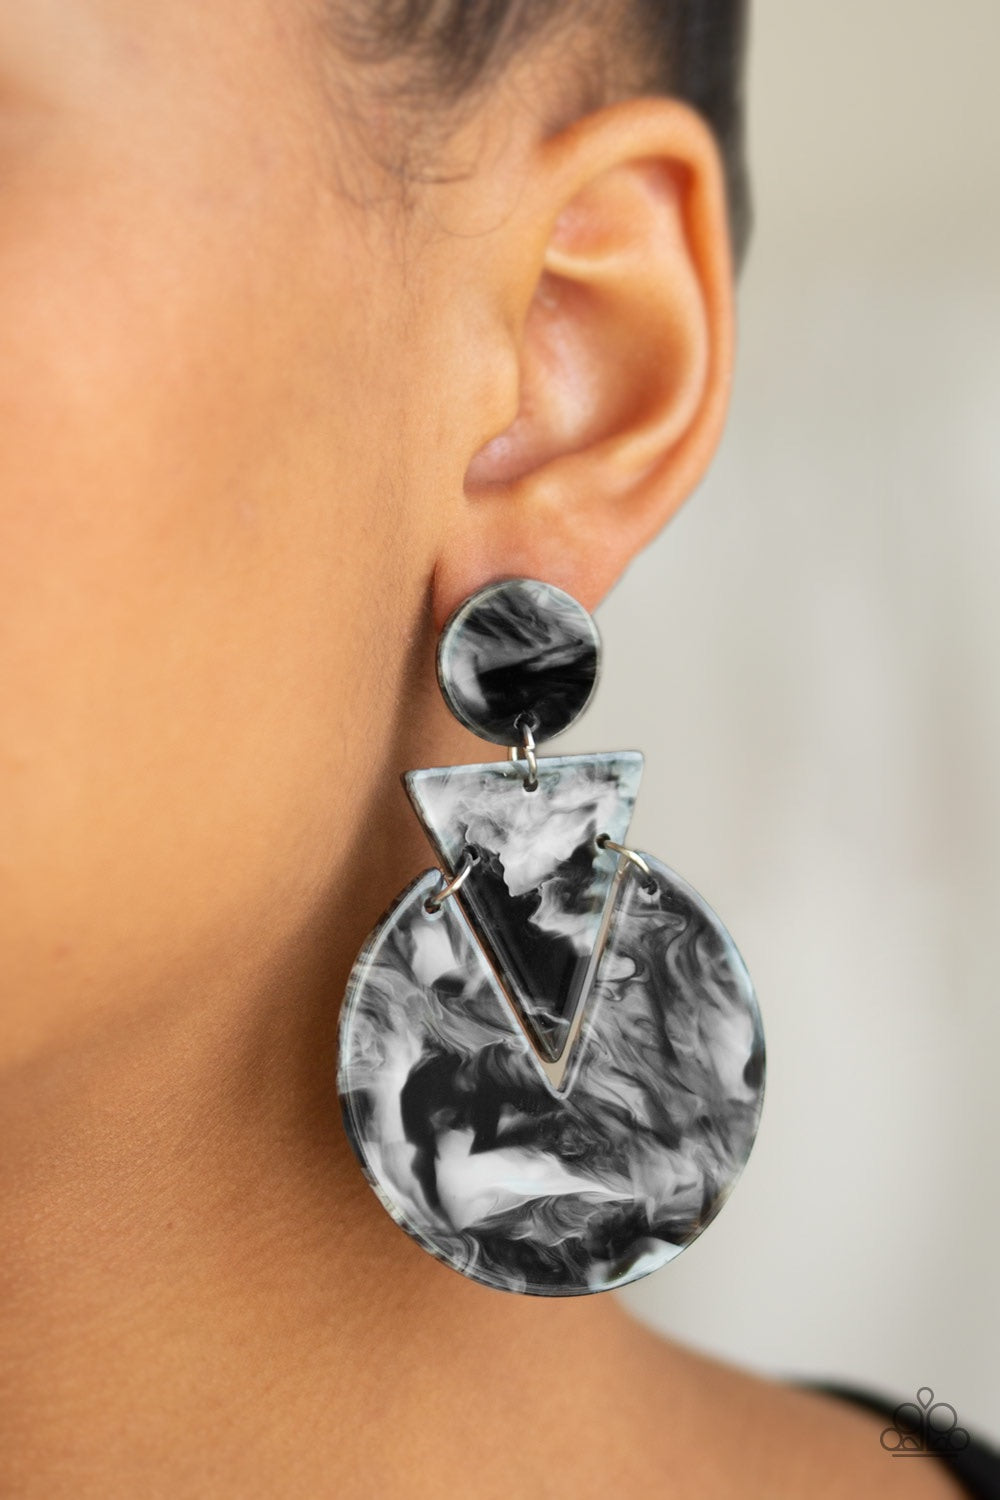 Paparazzi Jewelry Earrings Head Under WATERCOLORS - Black